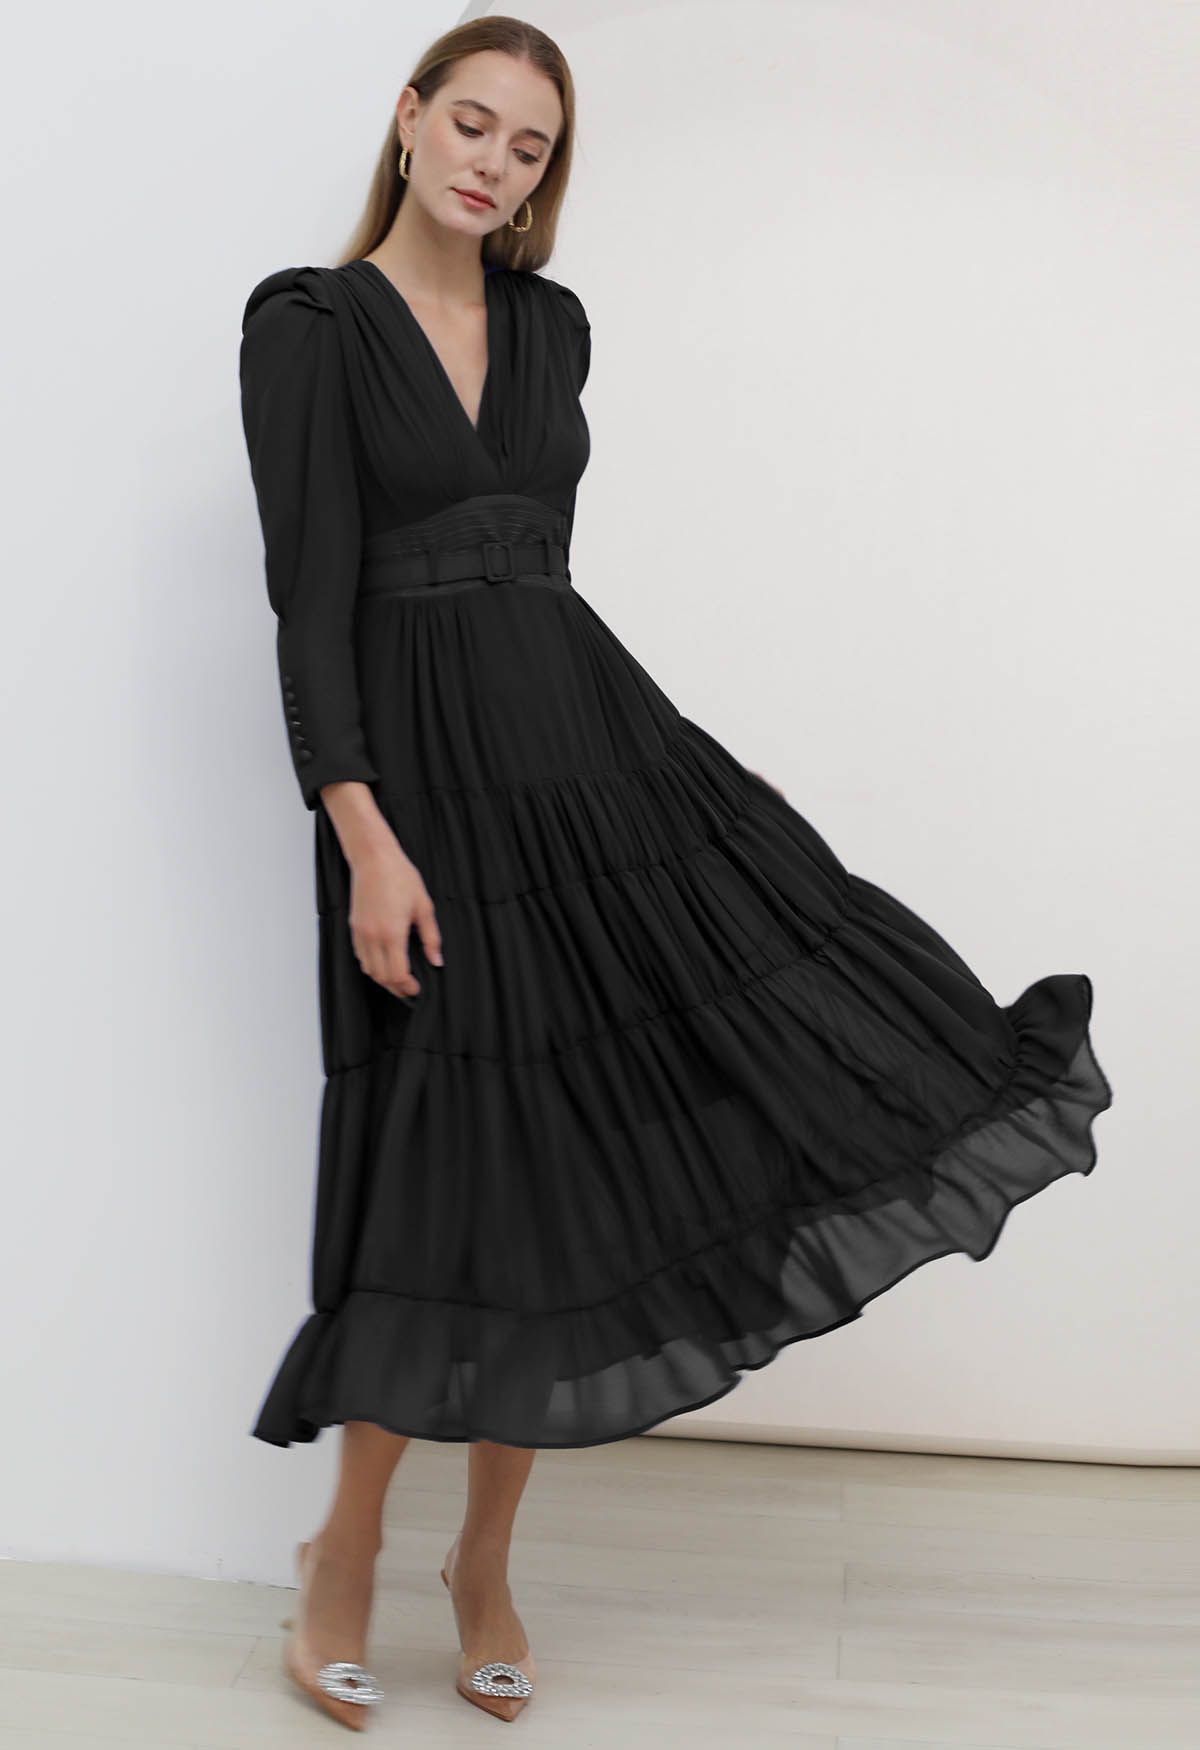 فستان من الشيفون ذو طبقات وحزام على شكل حرف V باللون الأسود